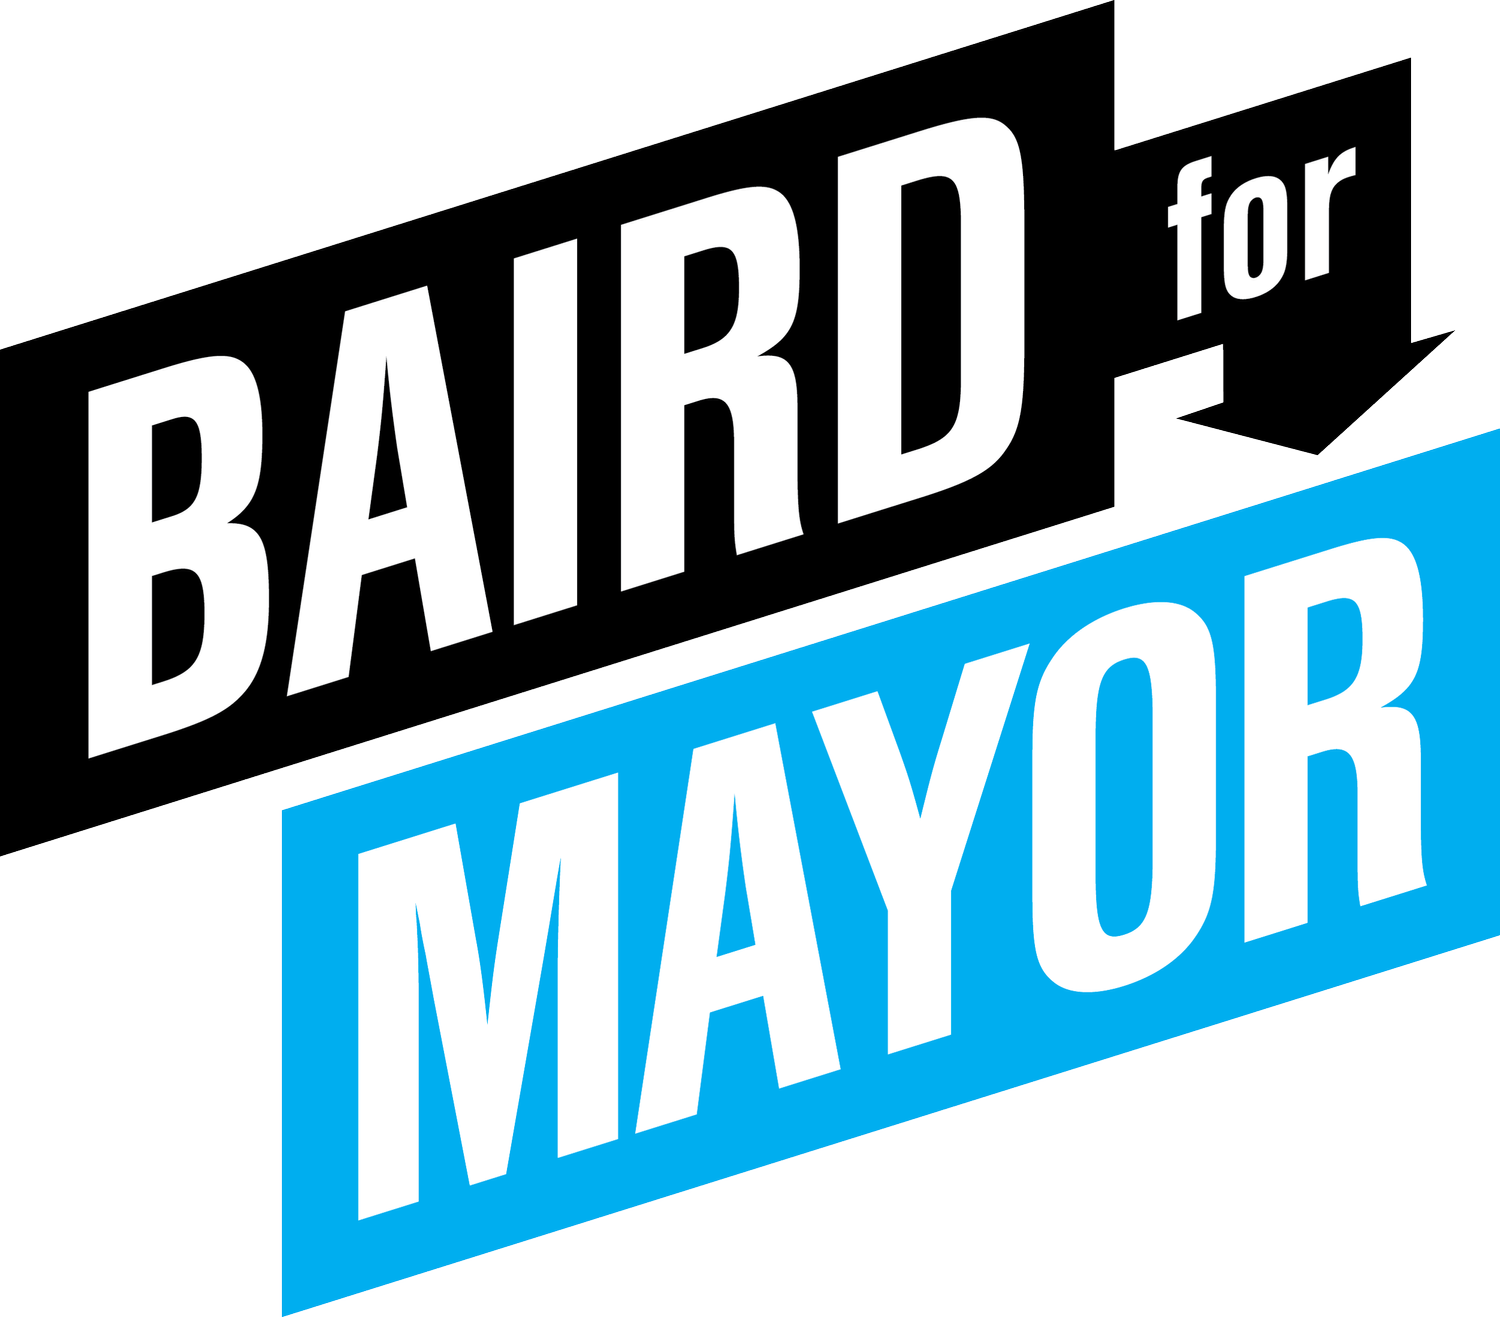 Bill Baird for Mayor